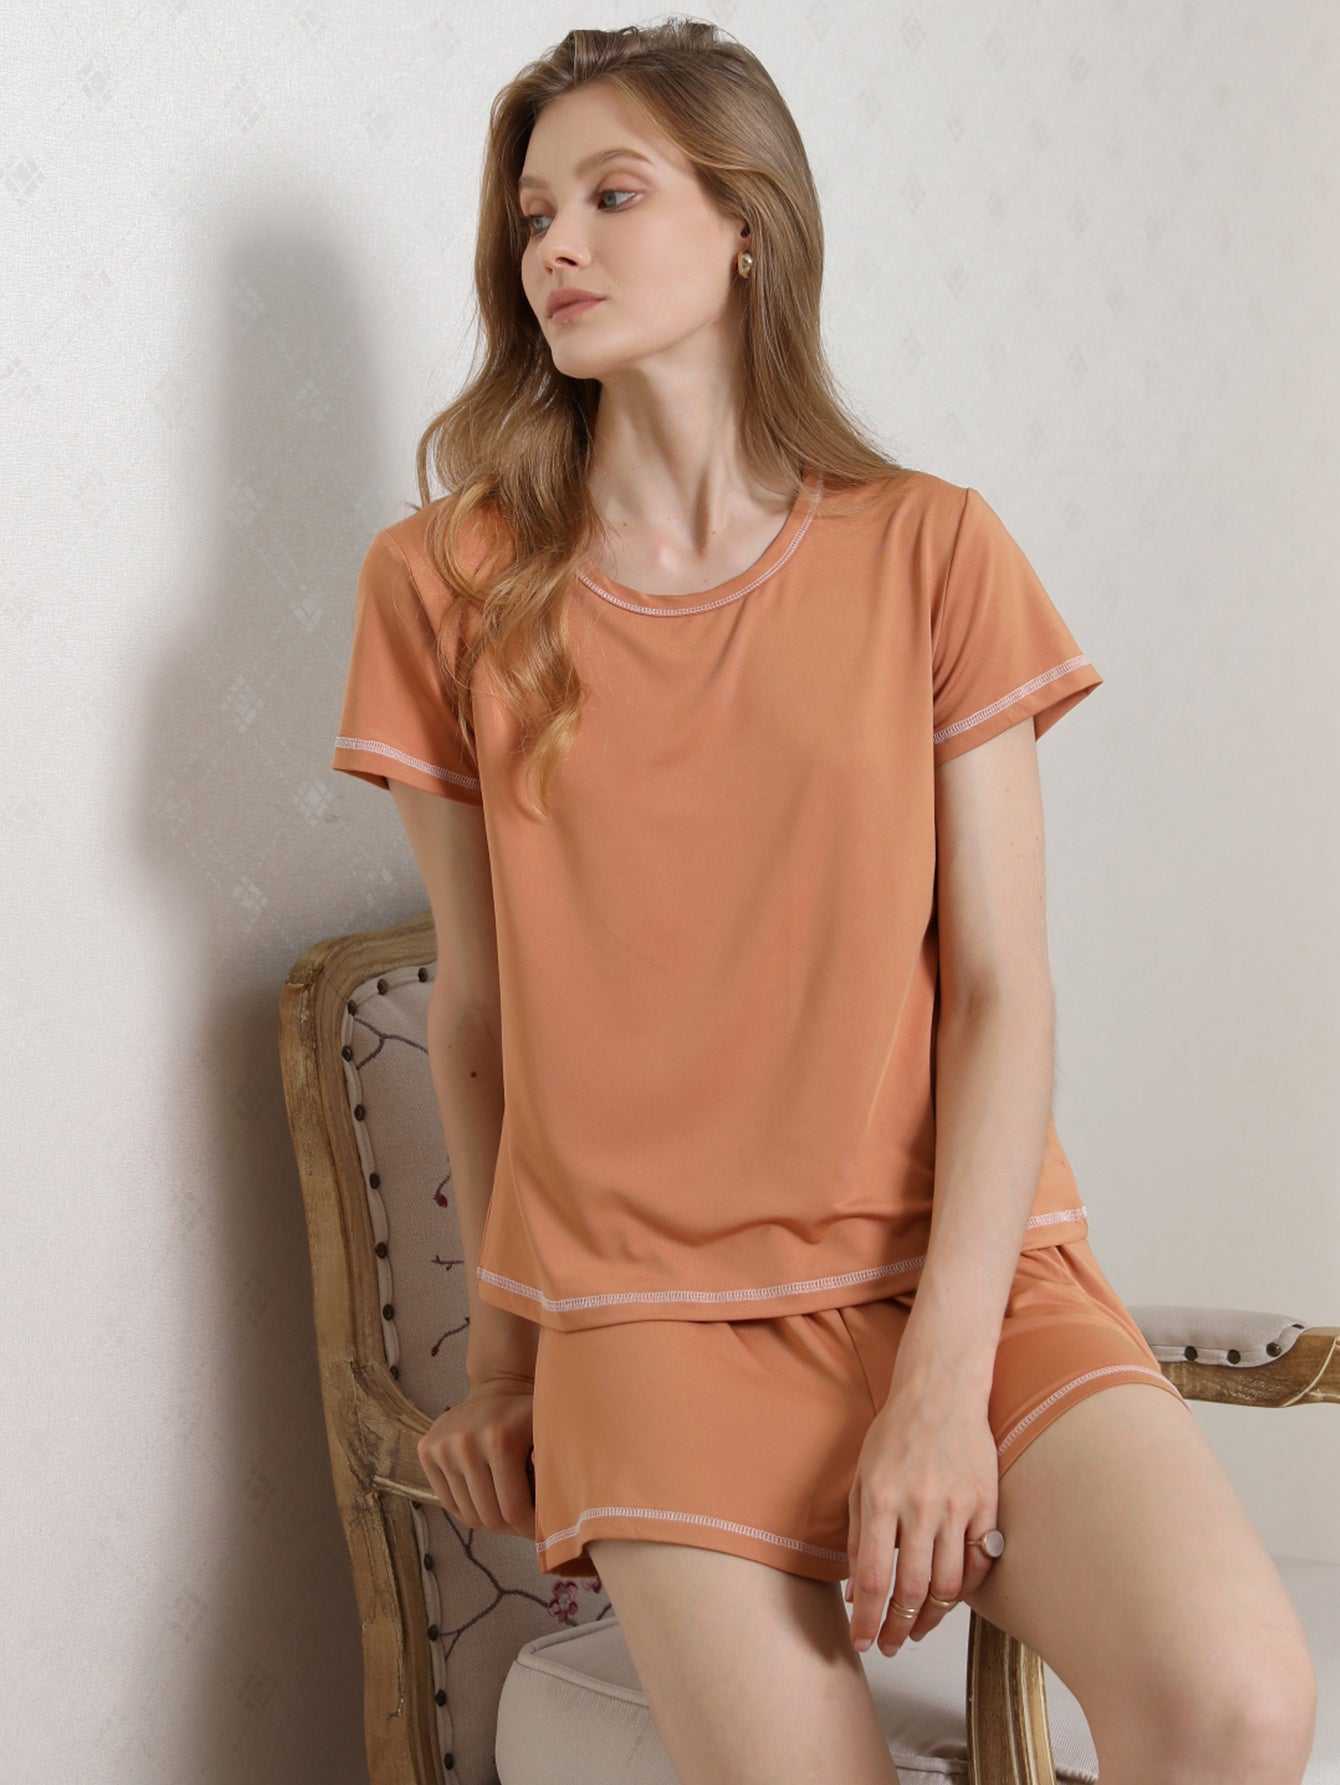 Women's Shorts Pajama Set Short Sleeve Sleepwear Nightwear Pjs S-XL Sai Feel